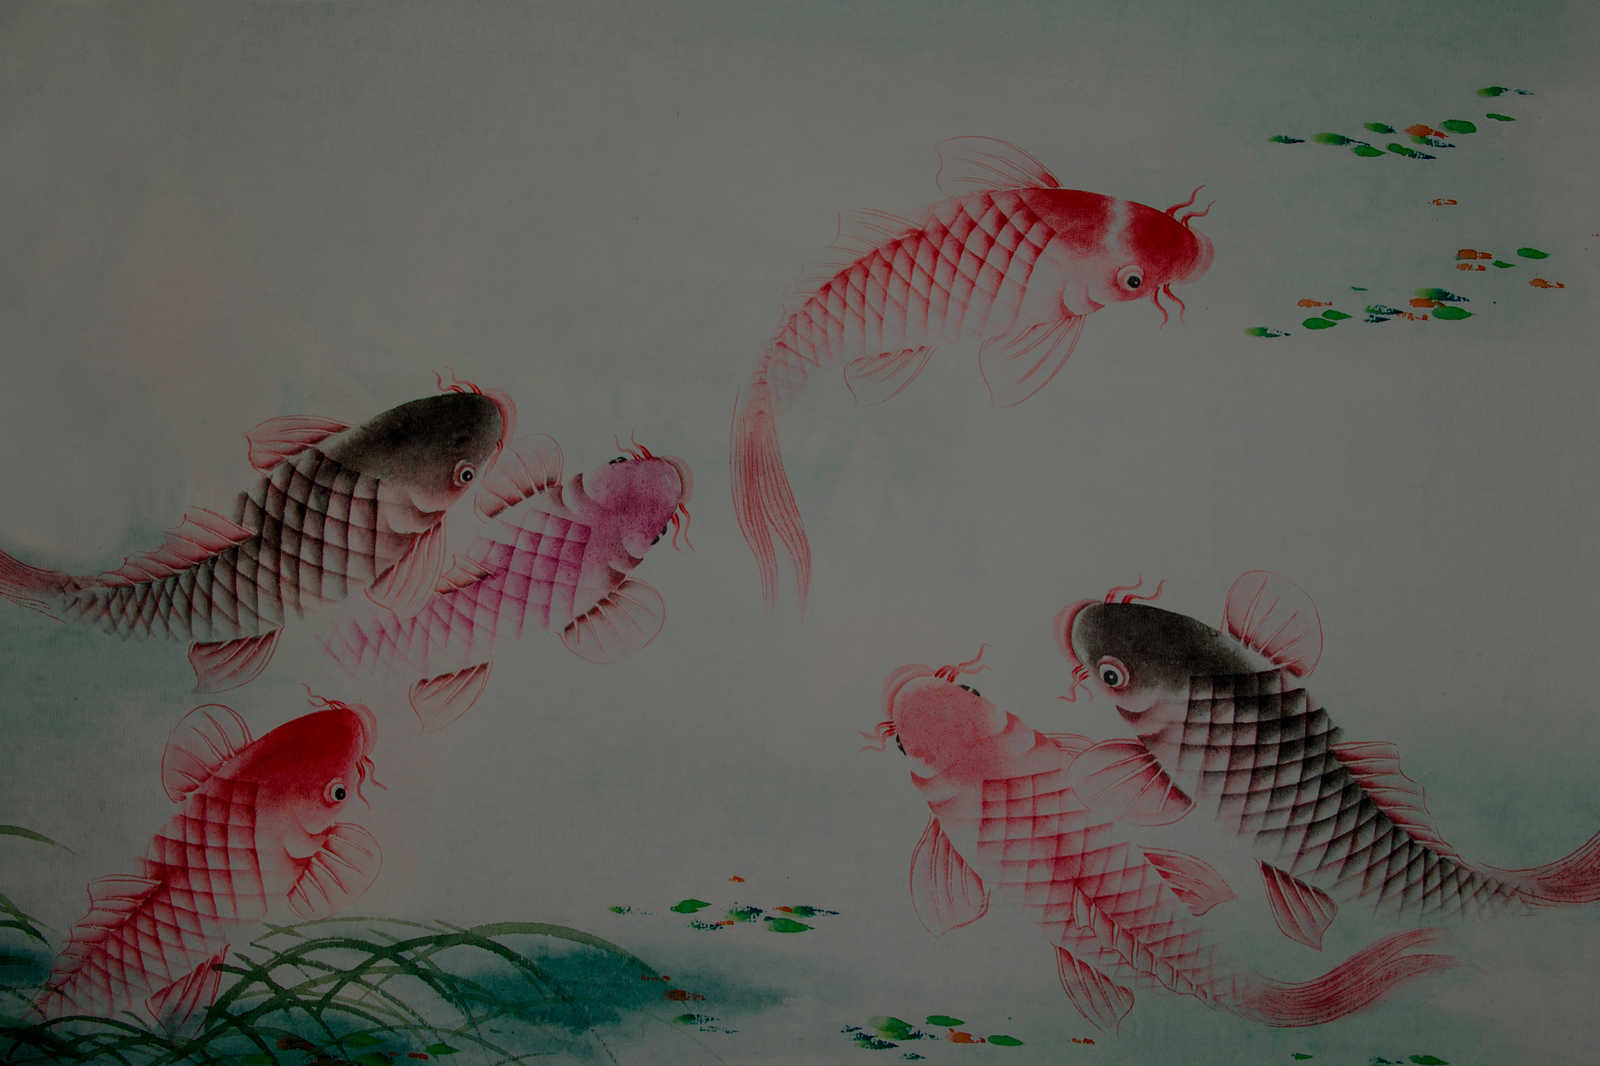             Canvas schilderij Azië Stijl met Koi vijver | muren door patel - 0,90 m x 0,60 m
        